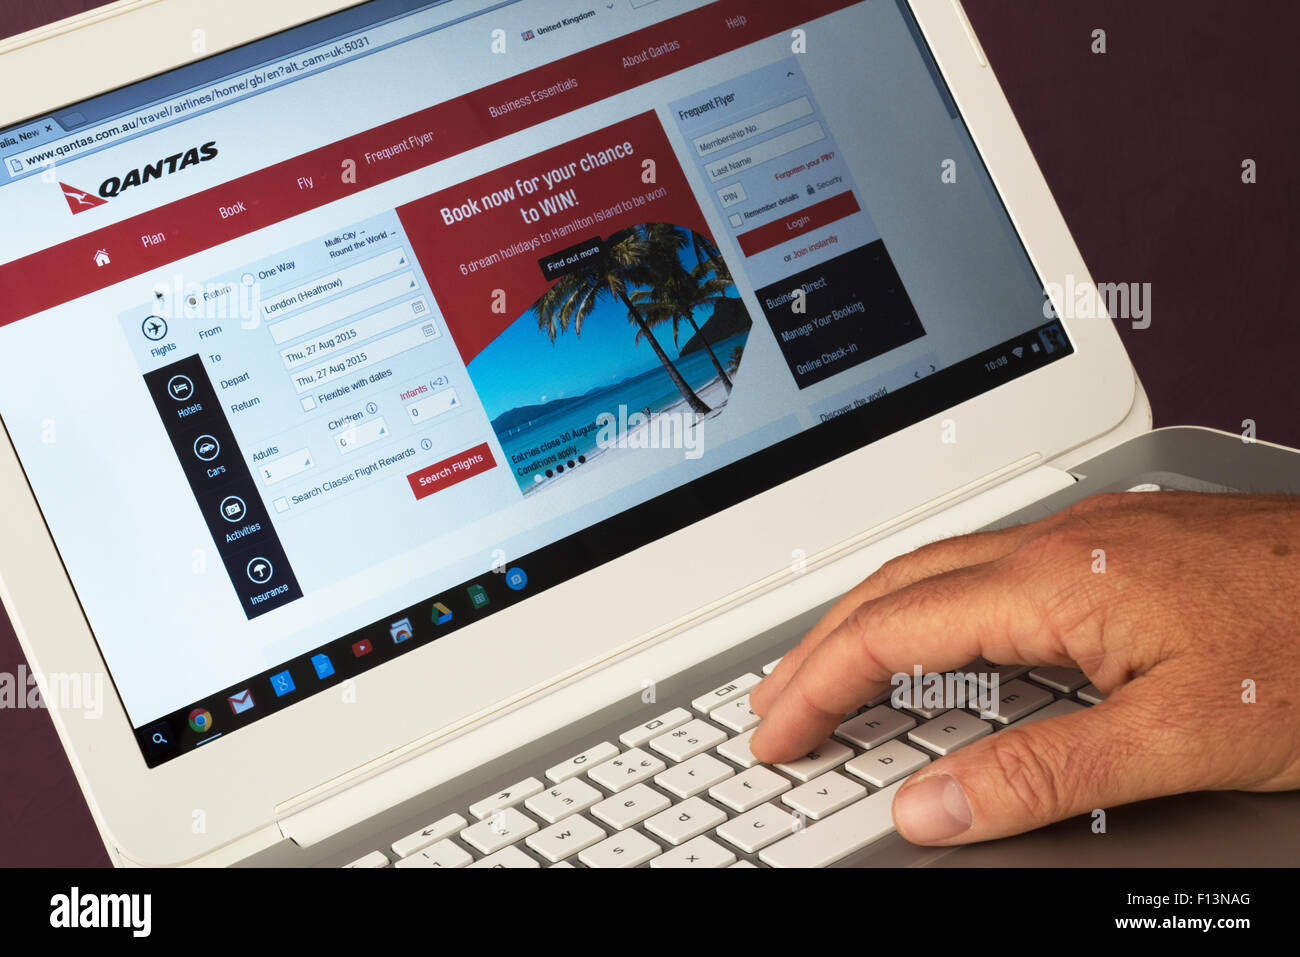 Sito web appartenenti a qantas essendo visualizzati su un computer portatile Foto Stock